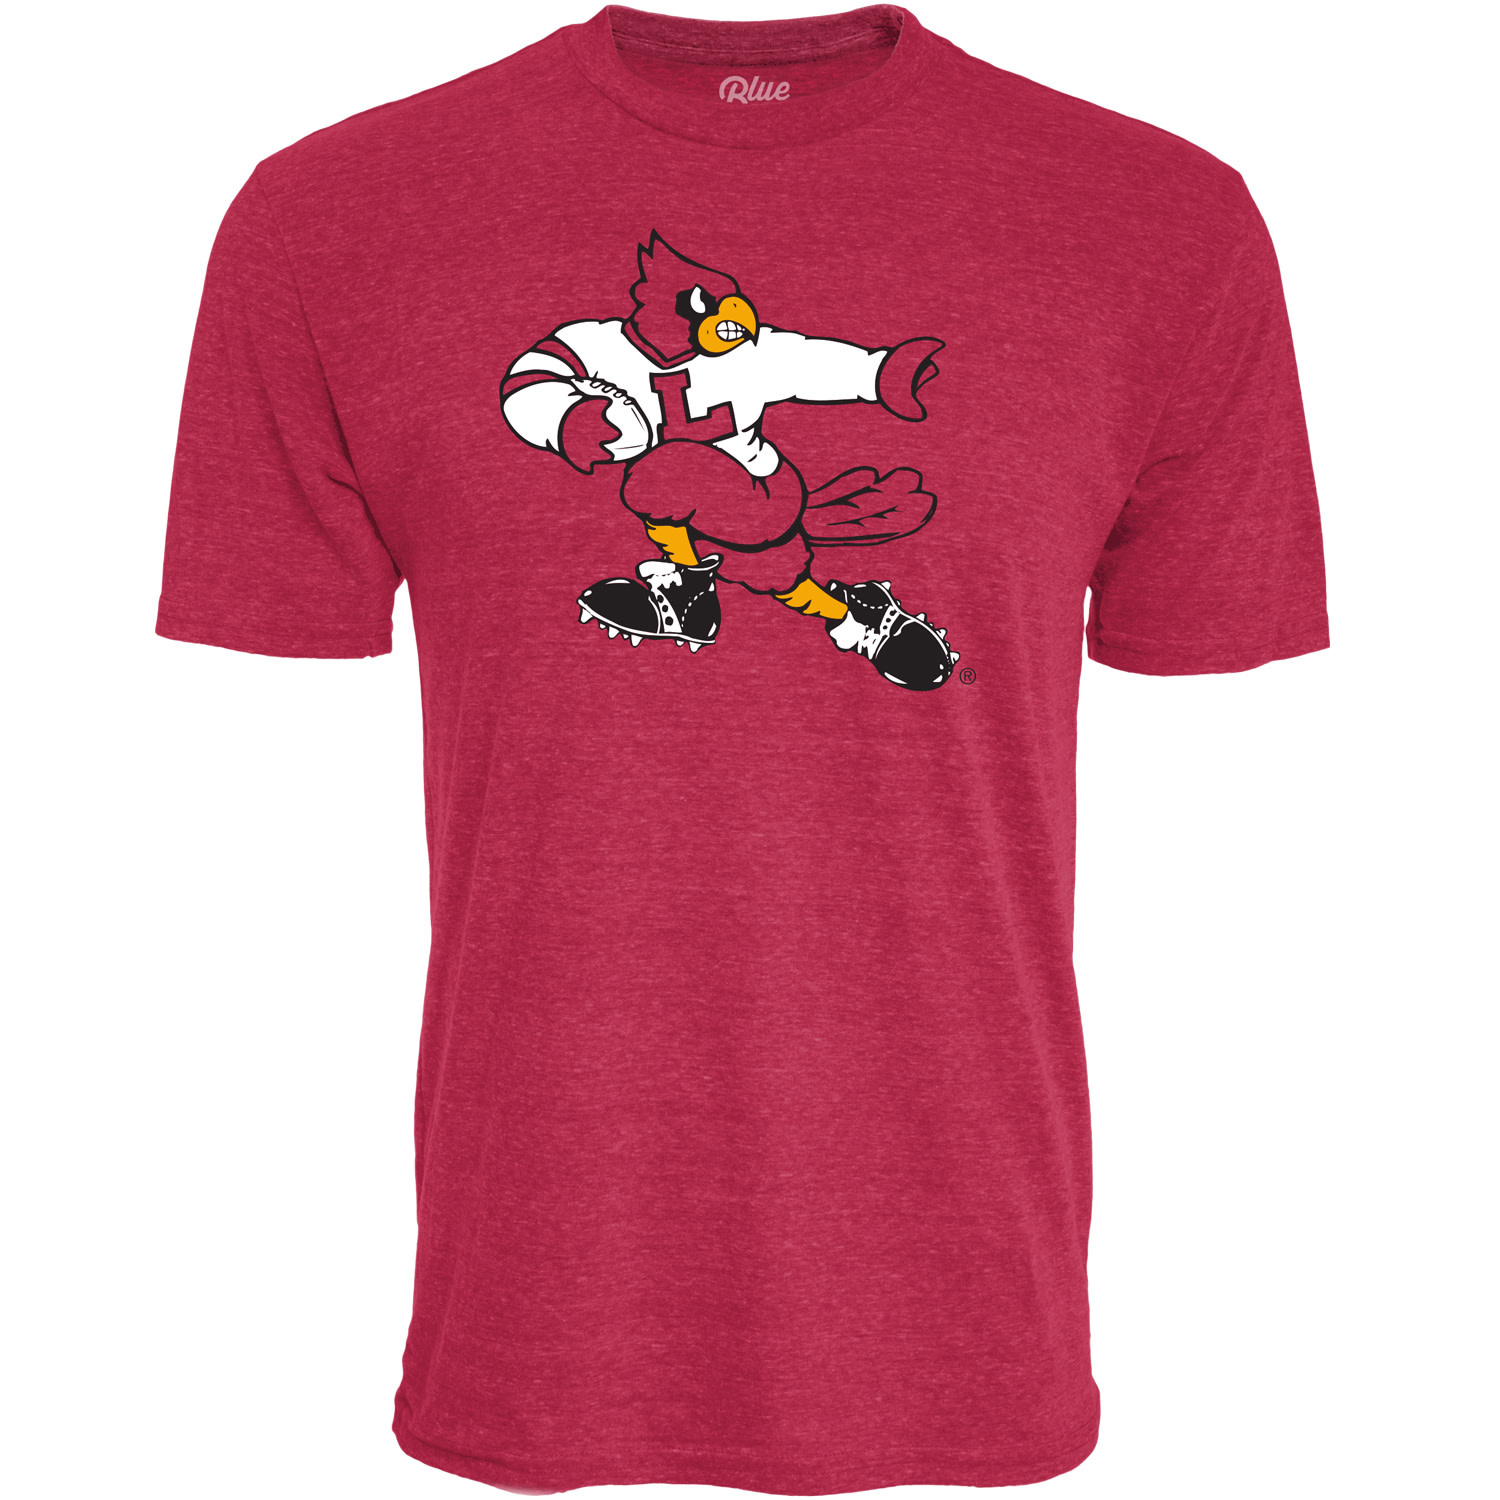 Louisville Cardinals Heisman Bird Shirt